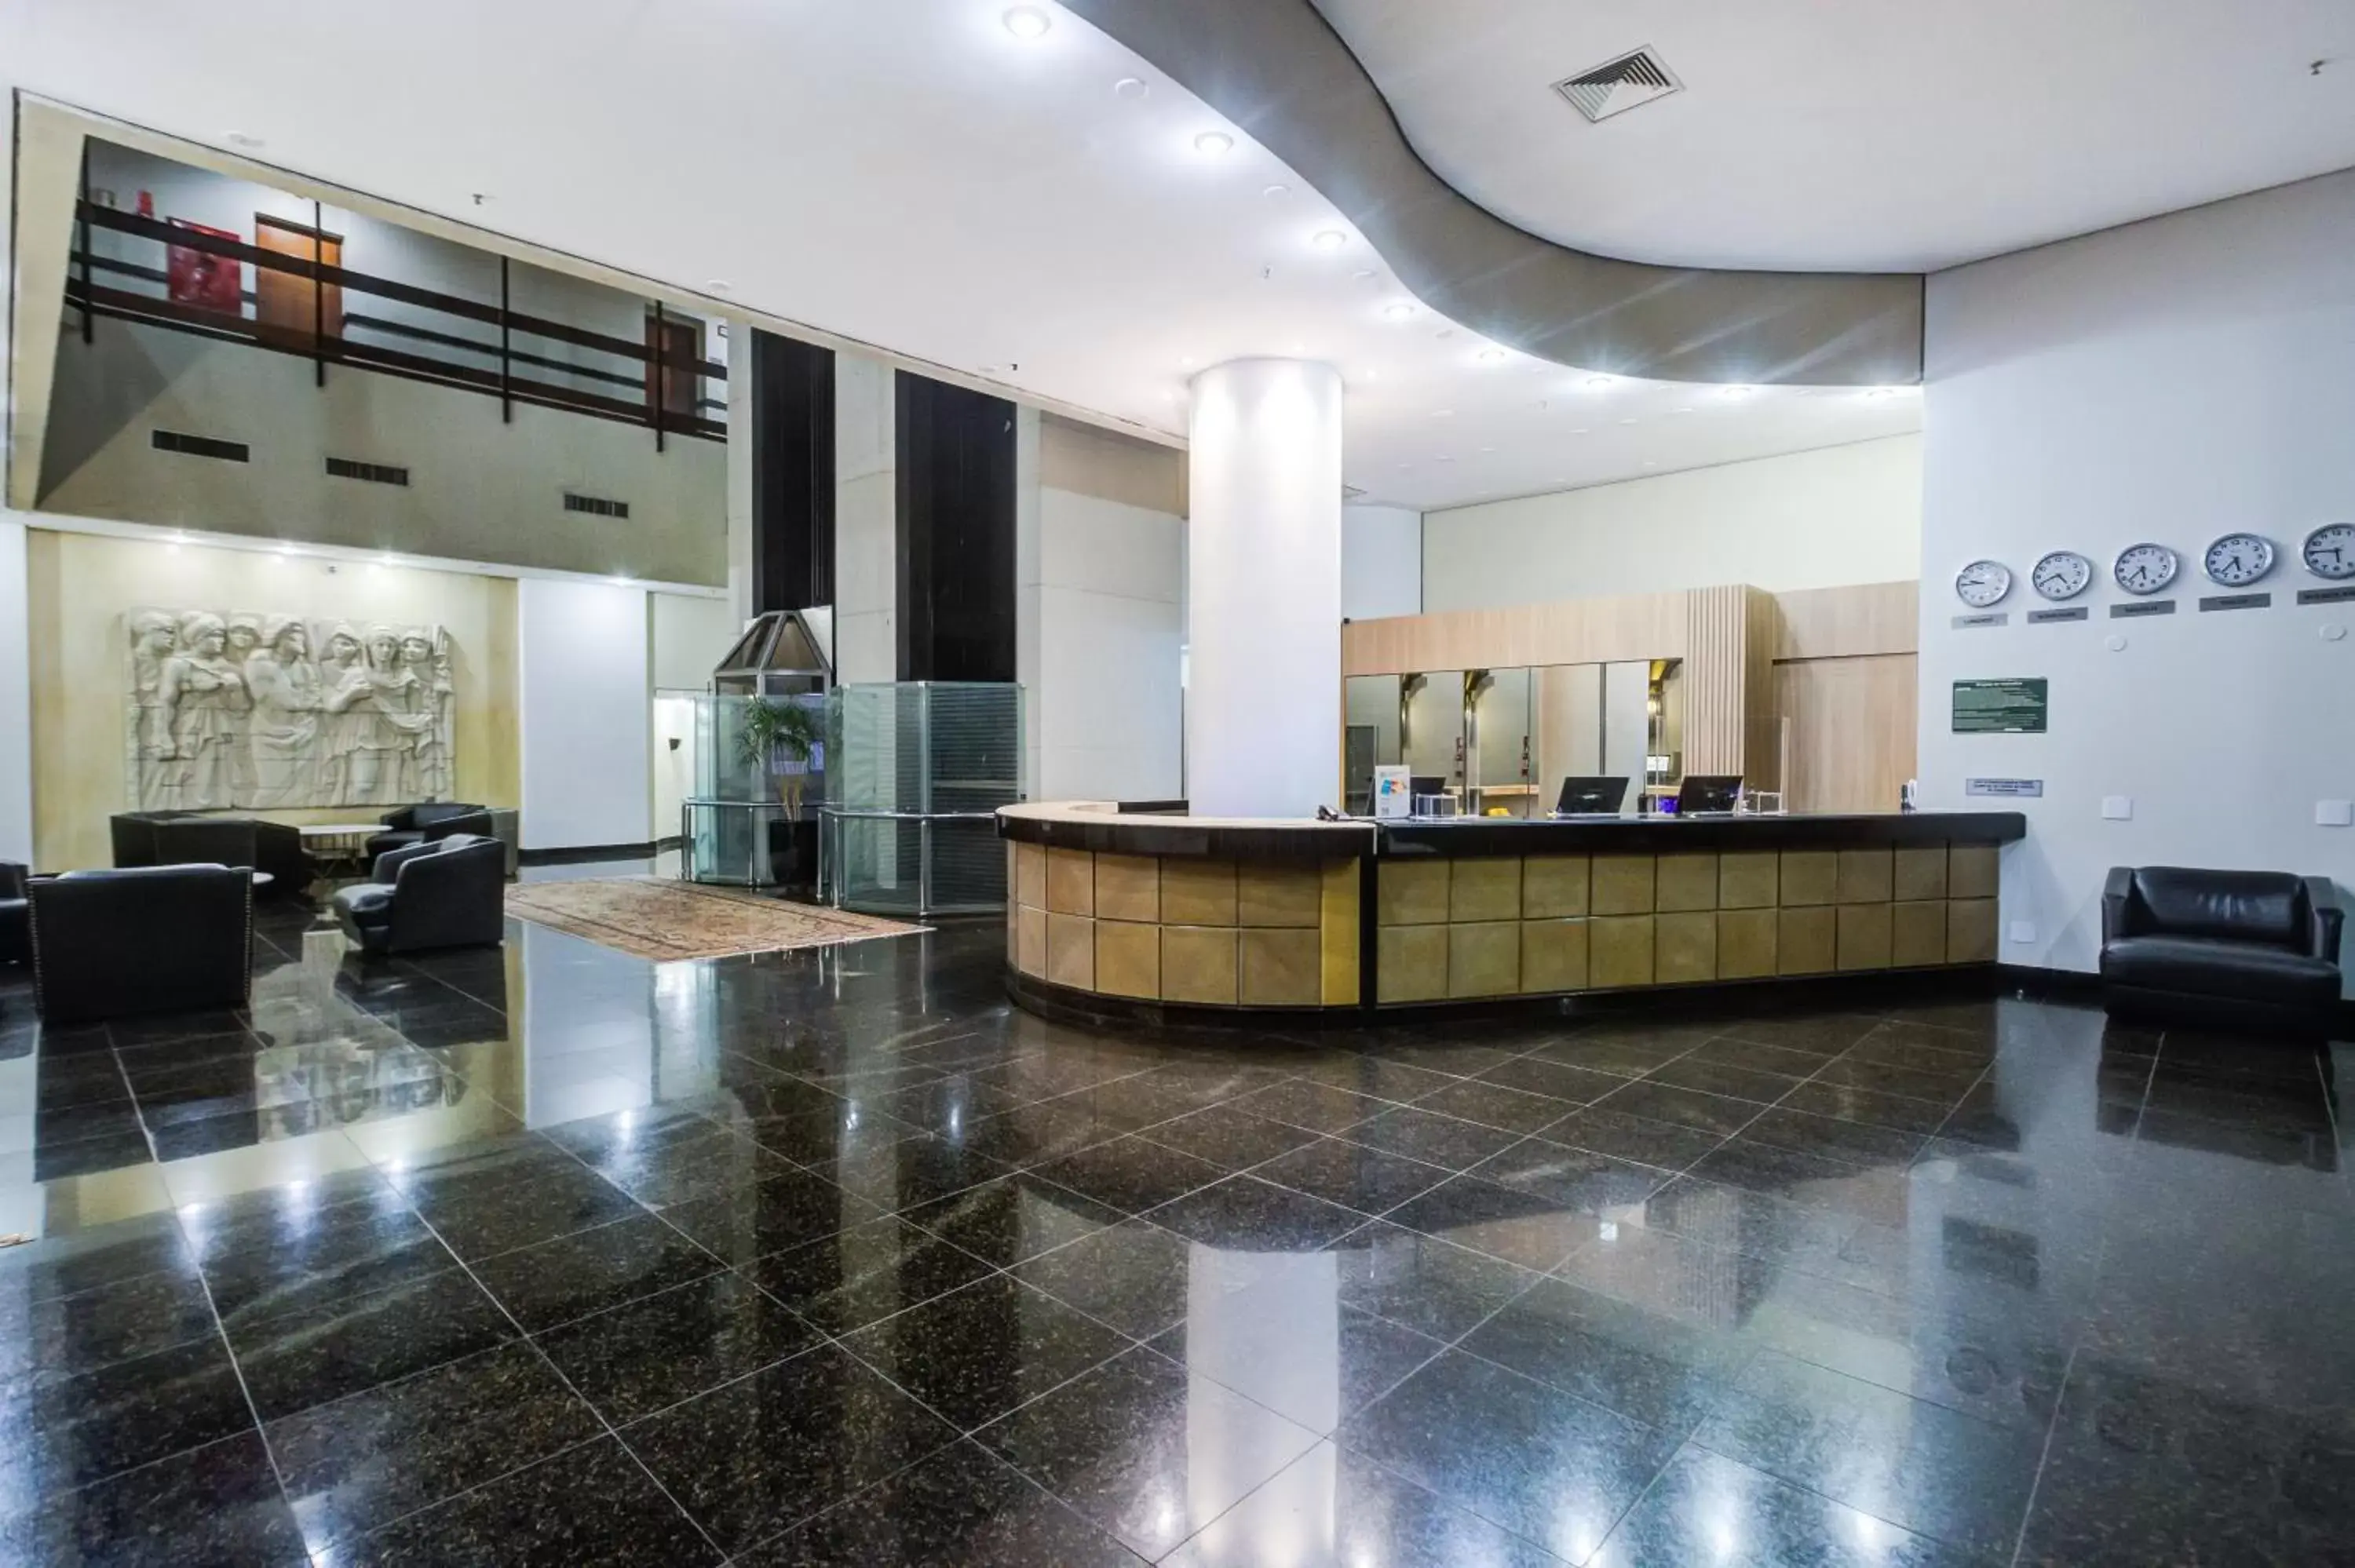 Lobby or reception, Lobby/Reception in Slaviero Londrina Flat